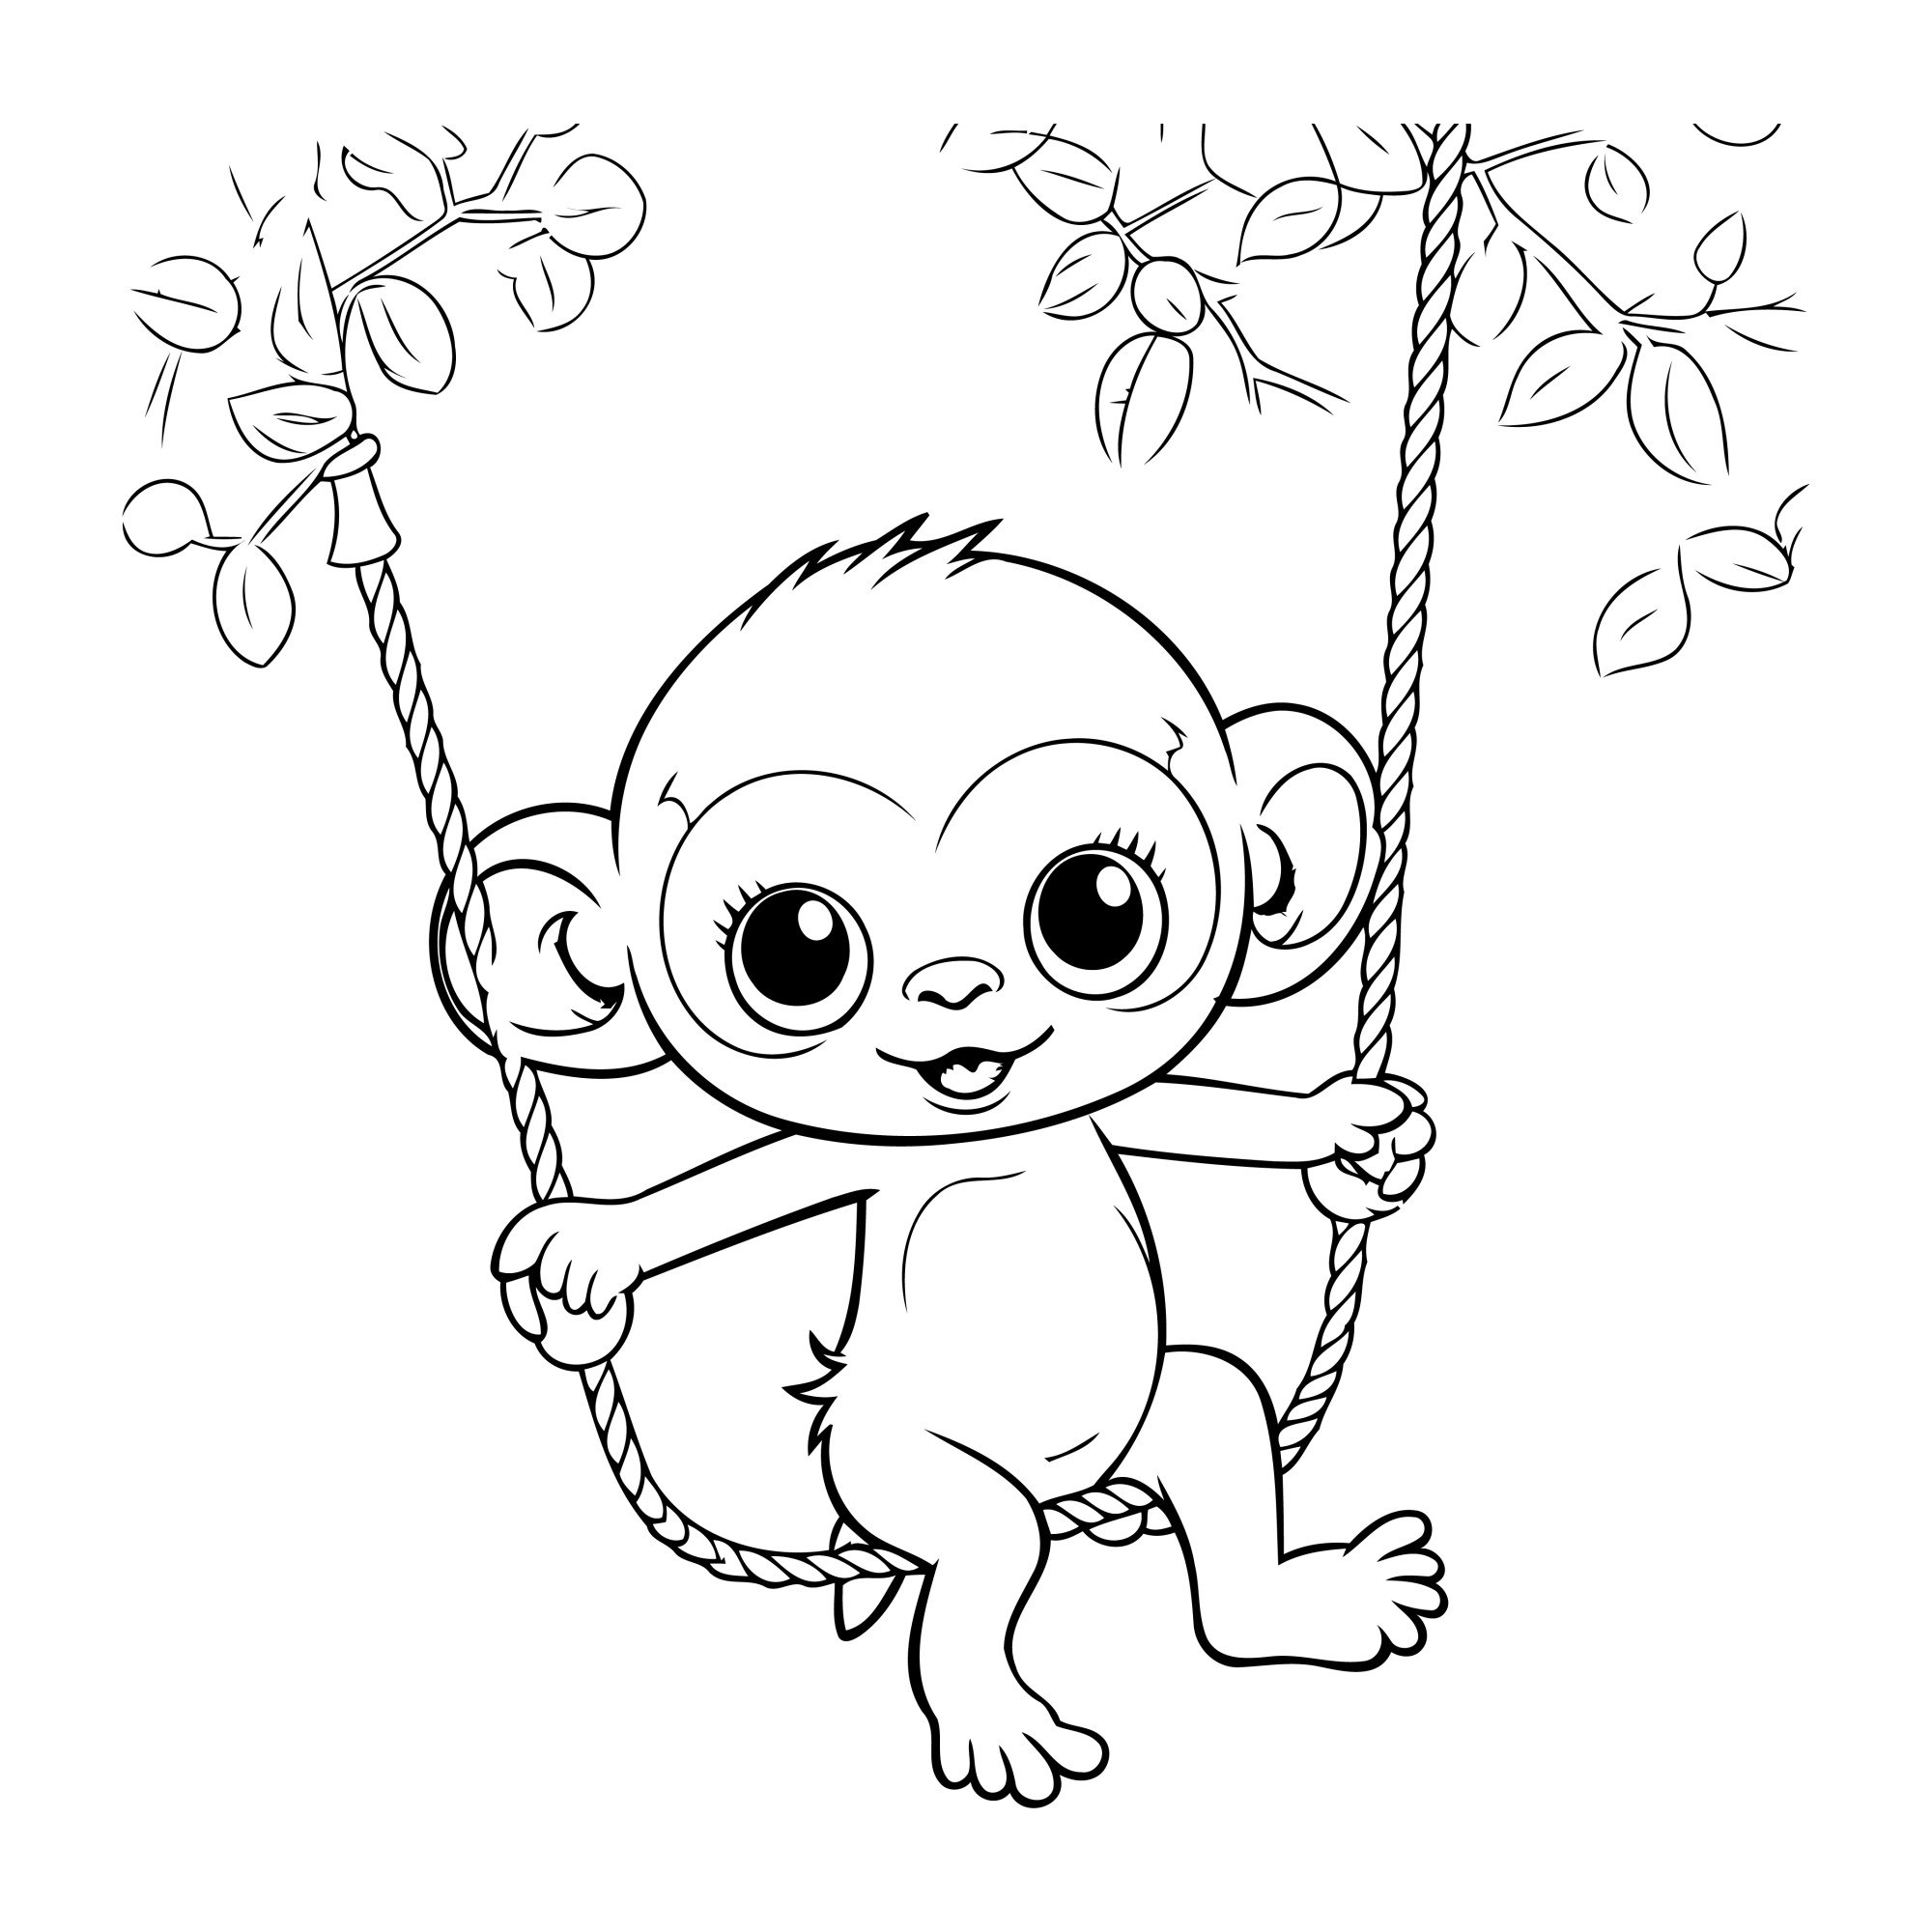 Раскраска для детей: милая обезьянка катается на веревке